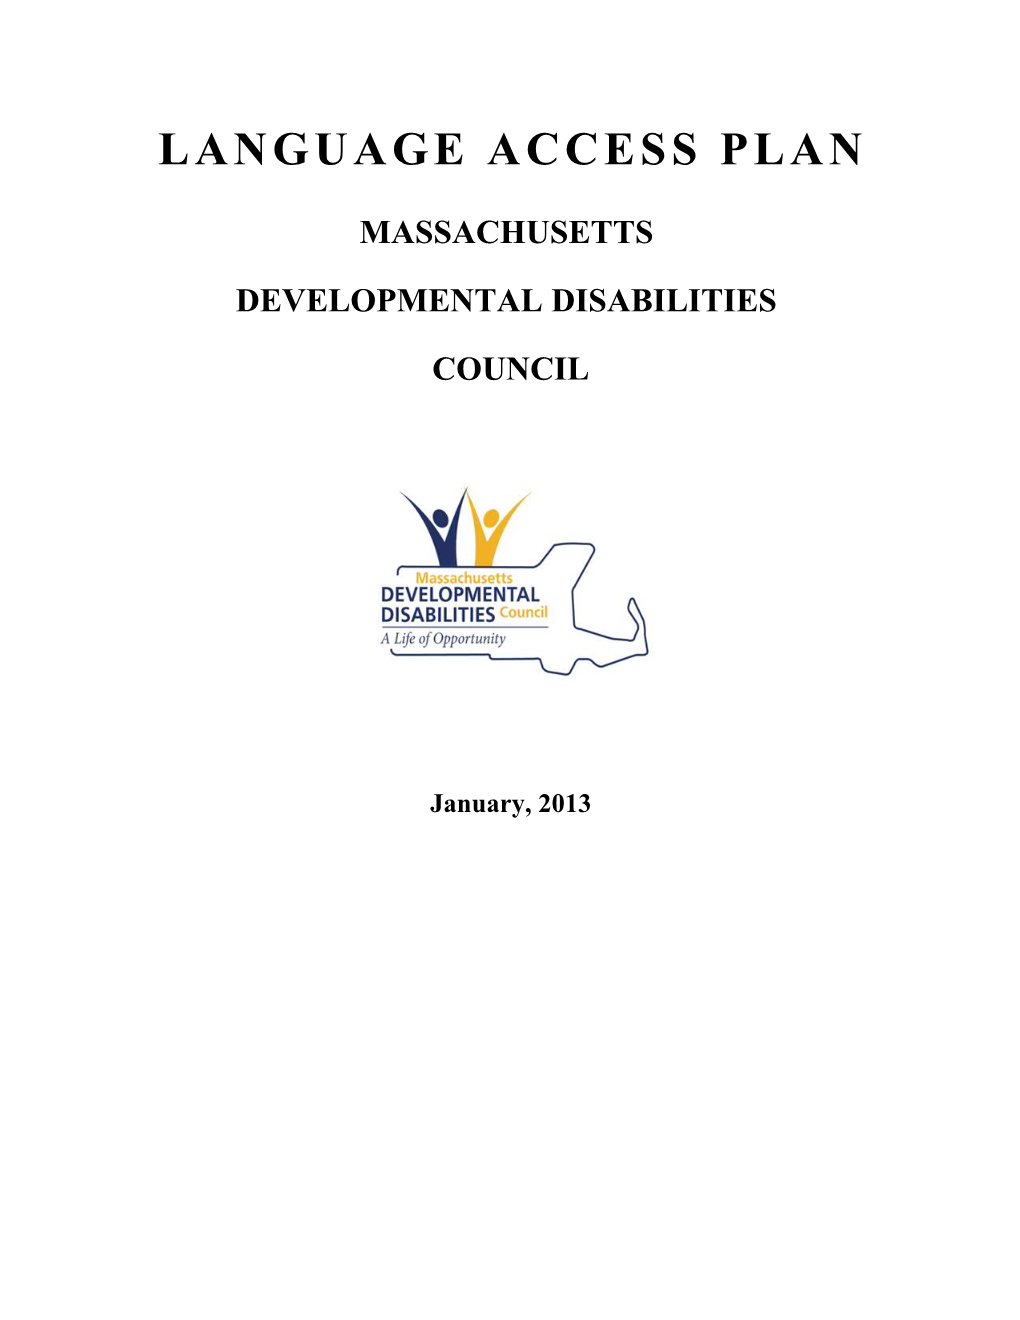 Mass Developmental Disabilities Language Access Plan